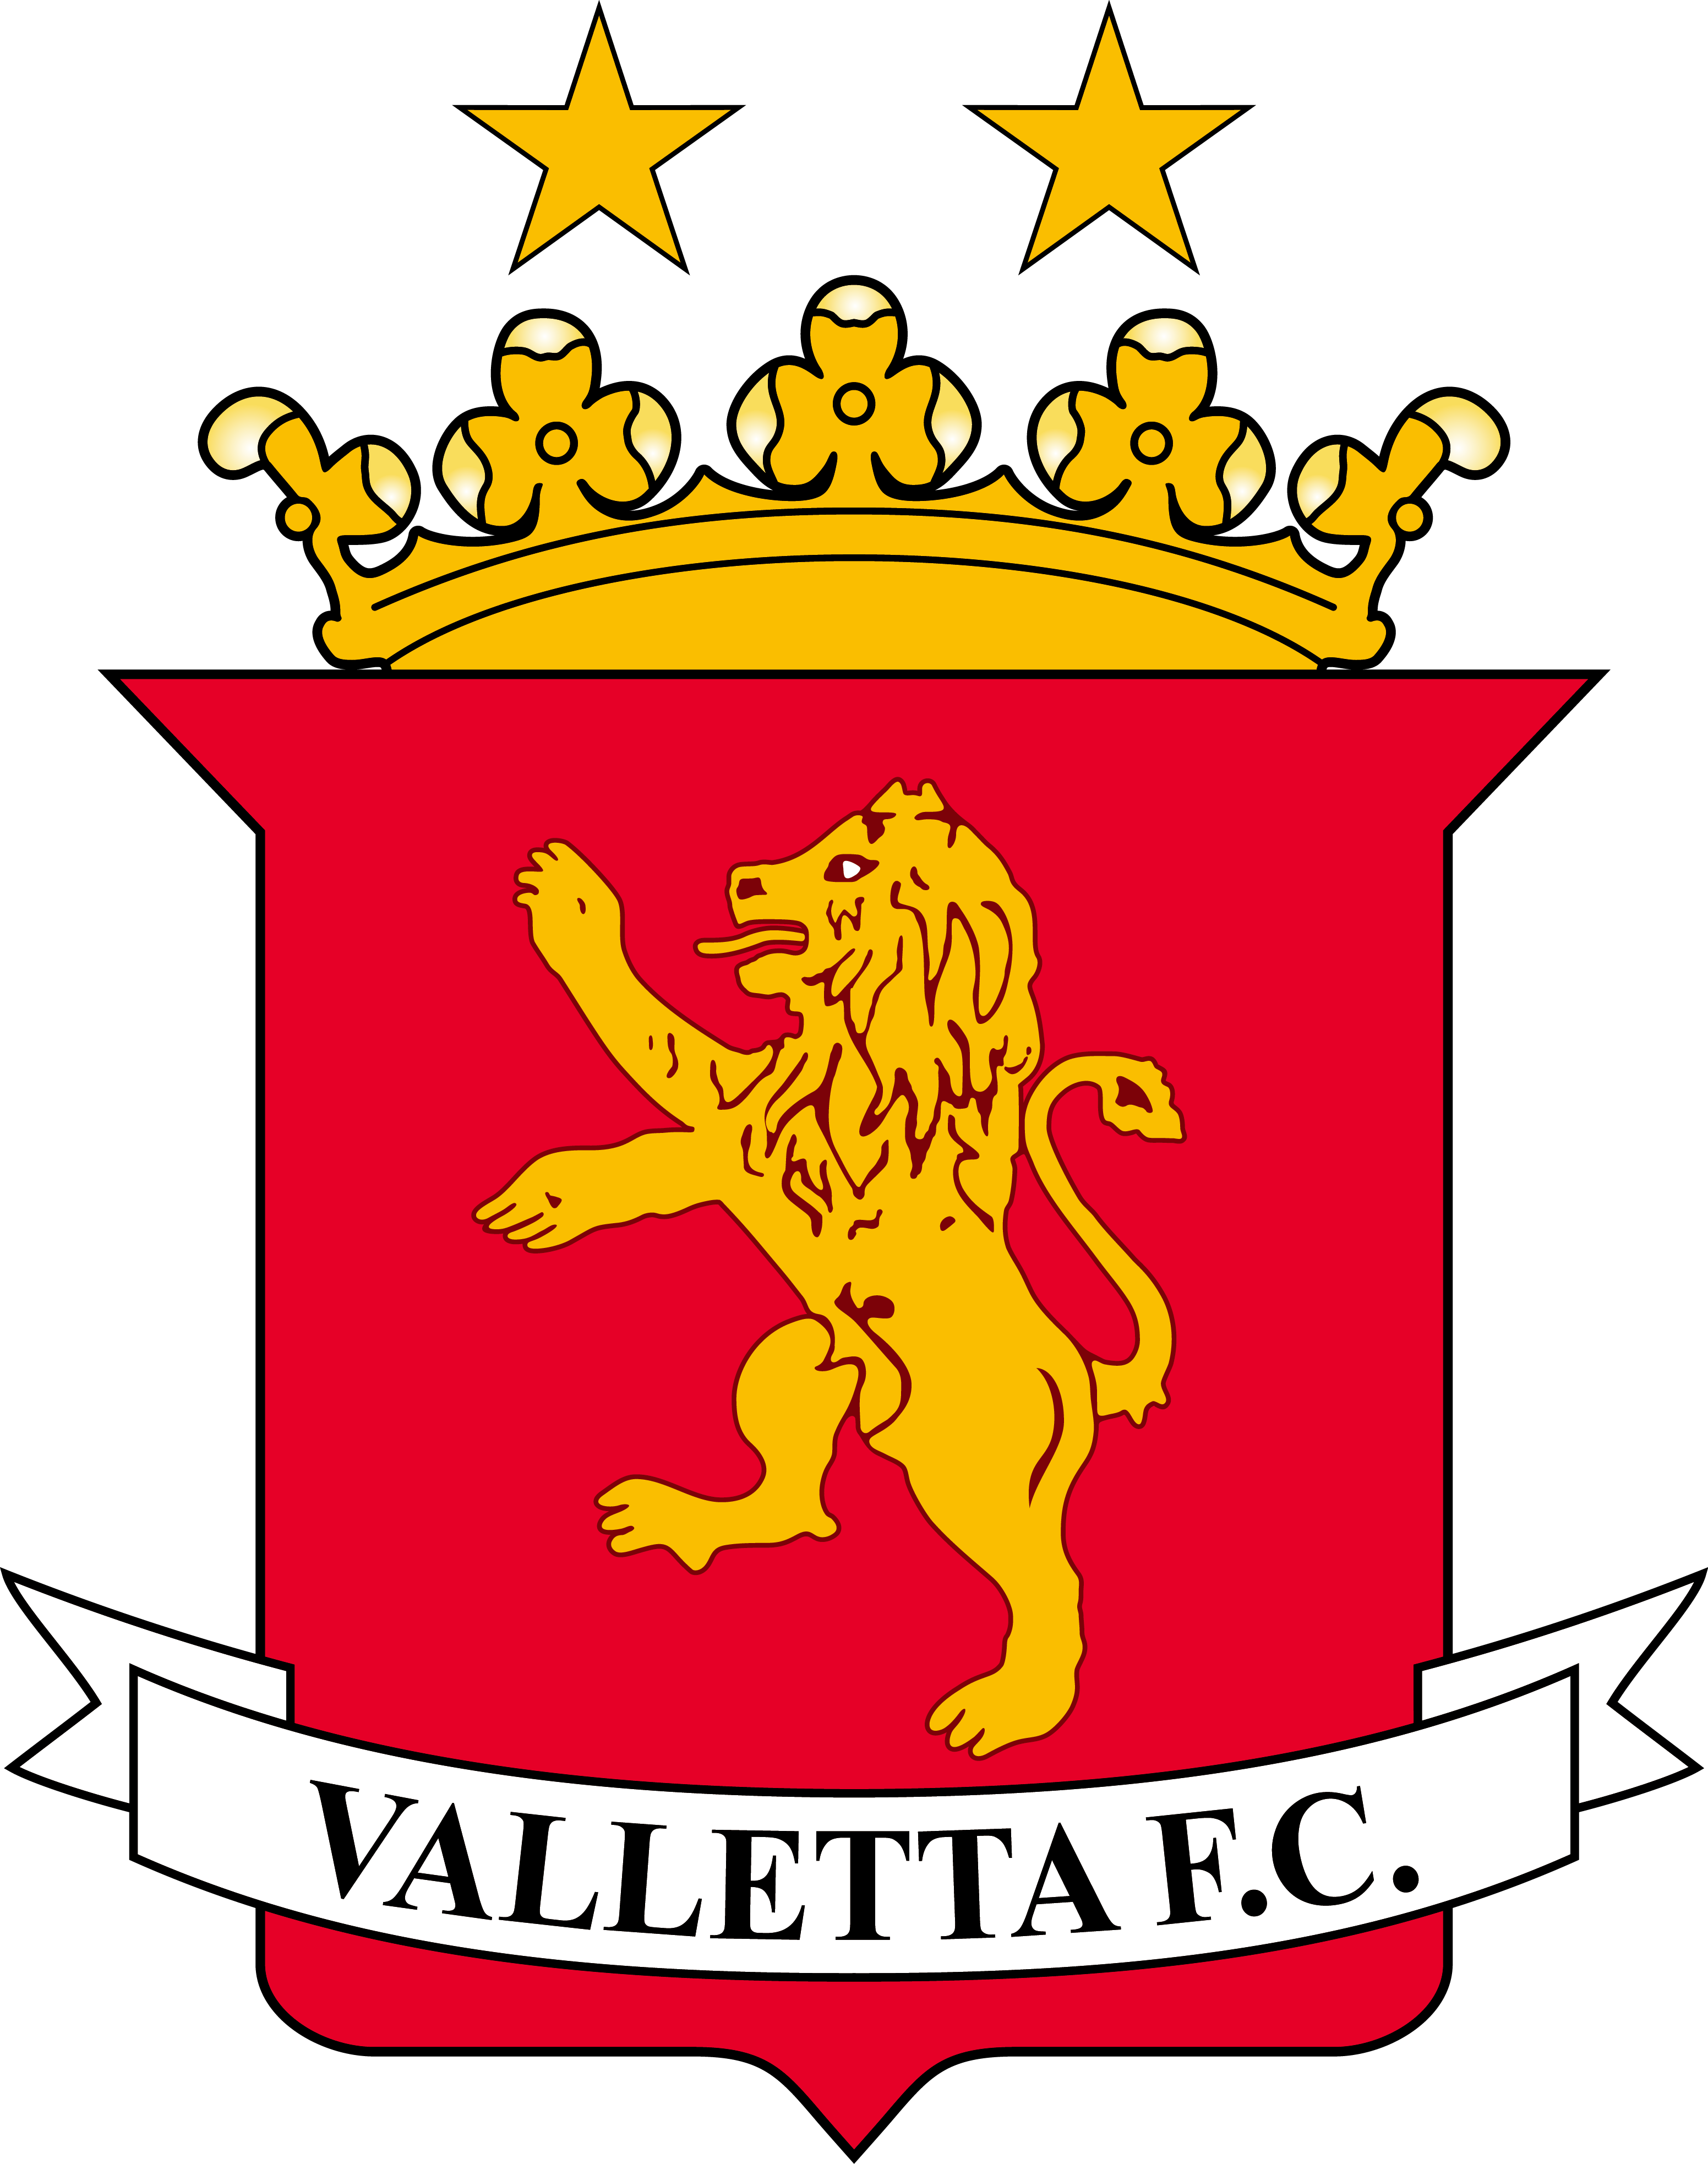 瓦萊塔足球俱樂部